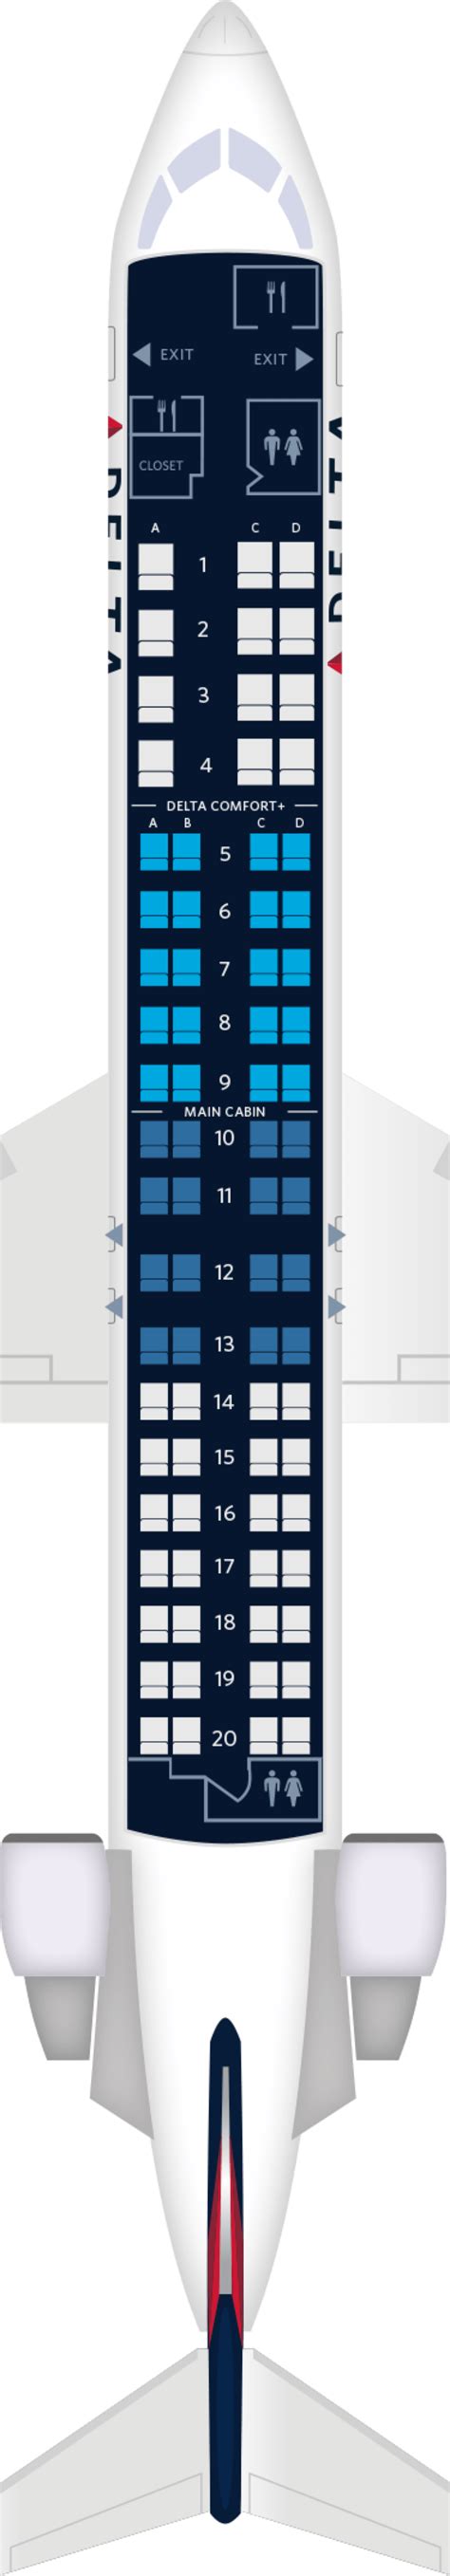 crj  aircraft seating chart